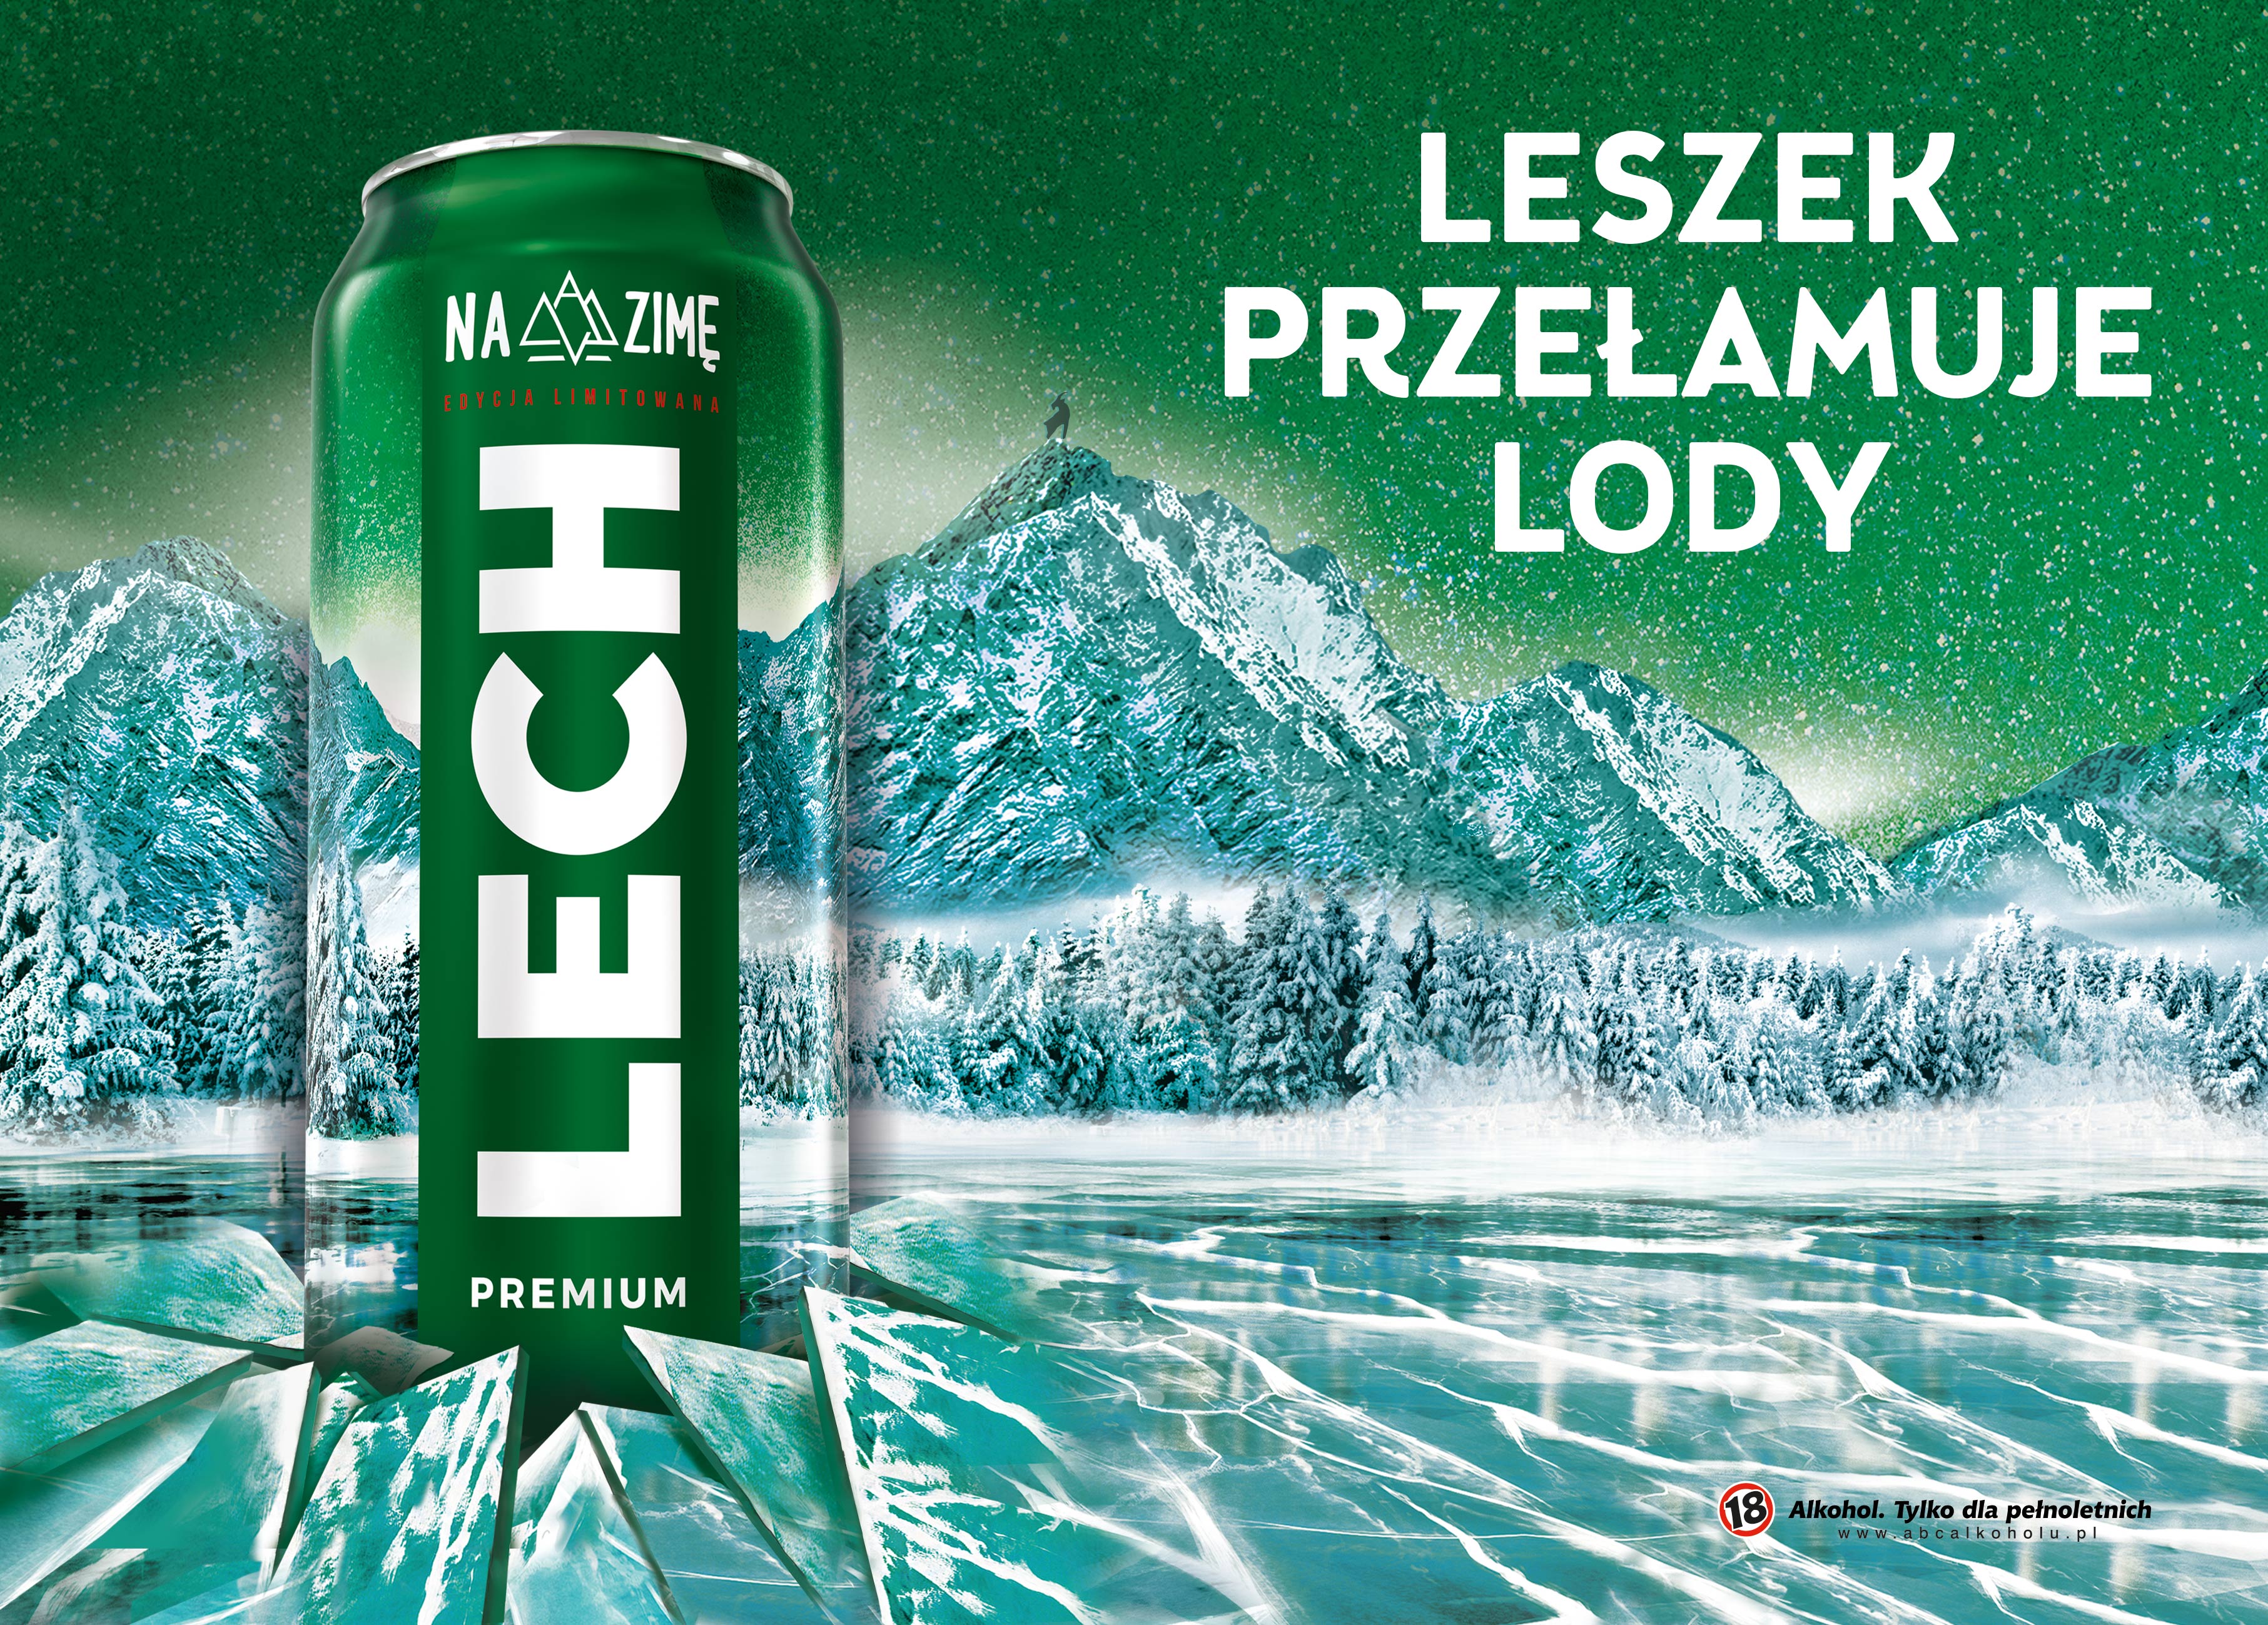 Leszek przełamuje lody  Rusza zimowa kampania reklamowa marki Lech Premium